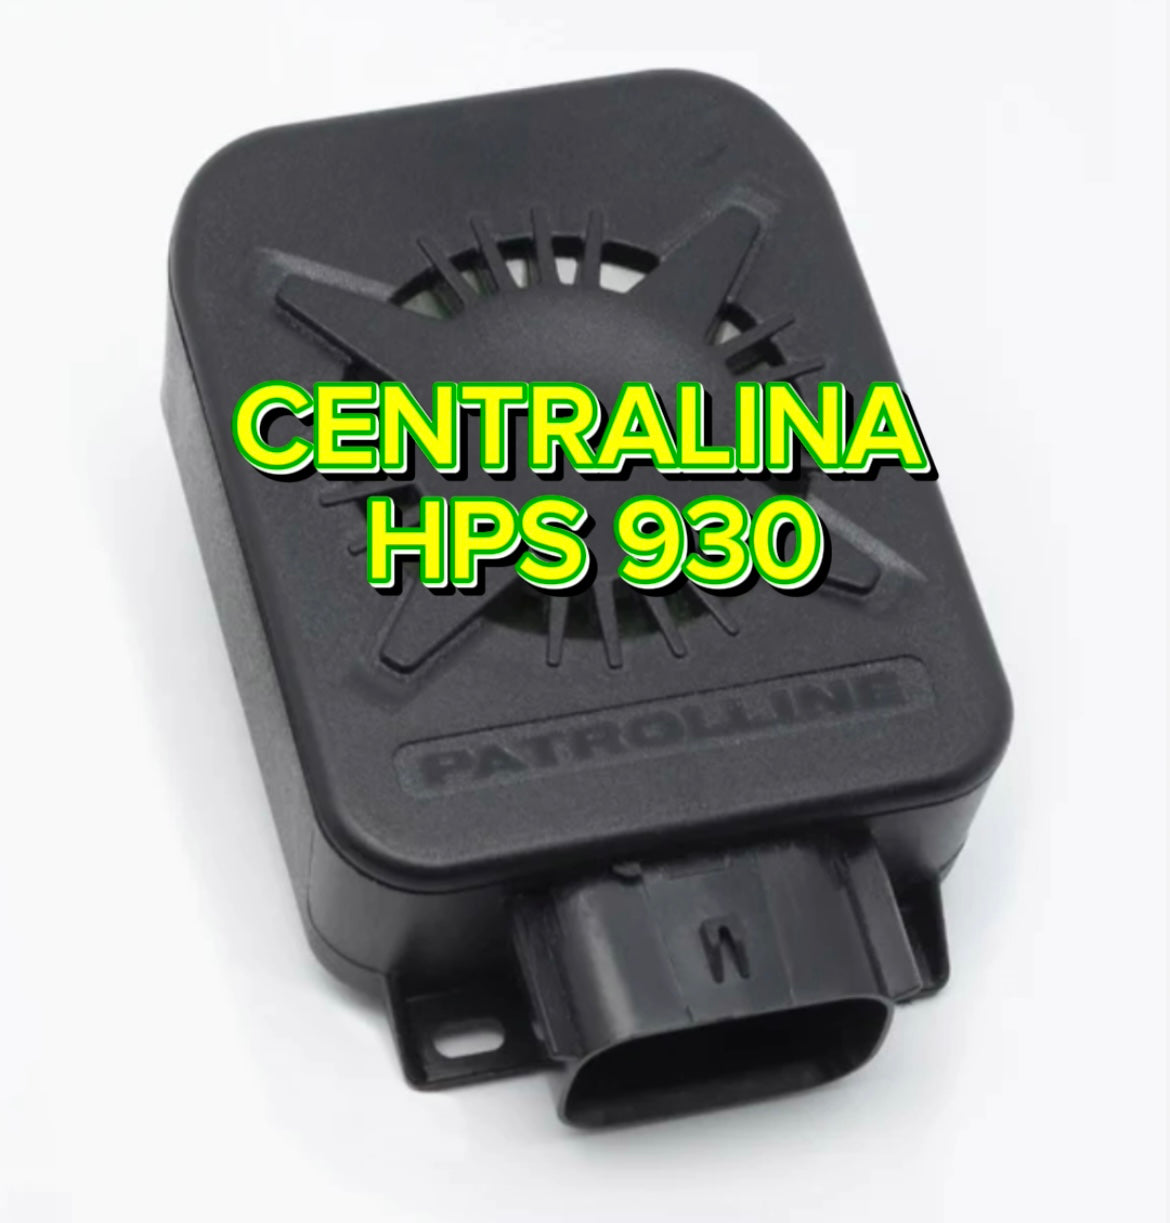 Centralina HPS 930 Patrolline - Antifurto Moto Senza Telecomandi - Allarme moto 